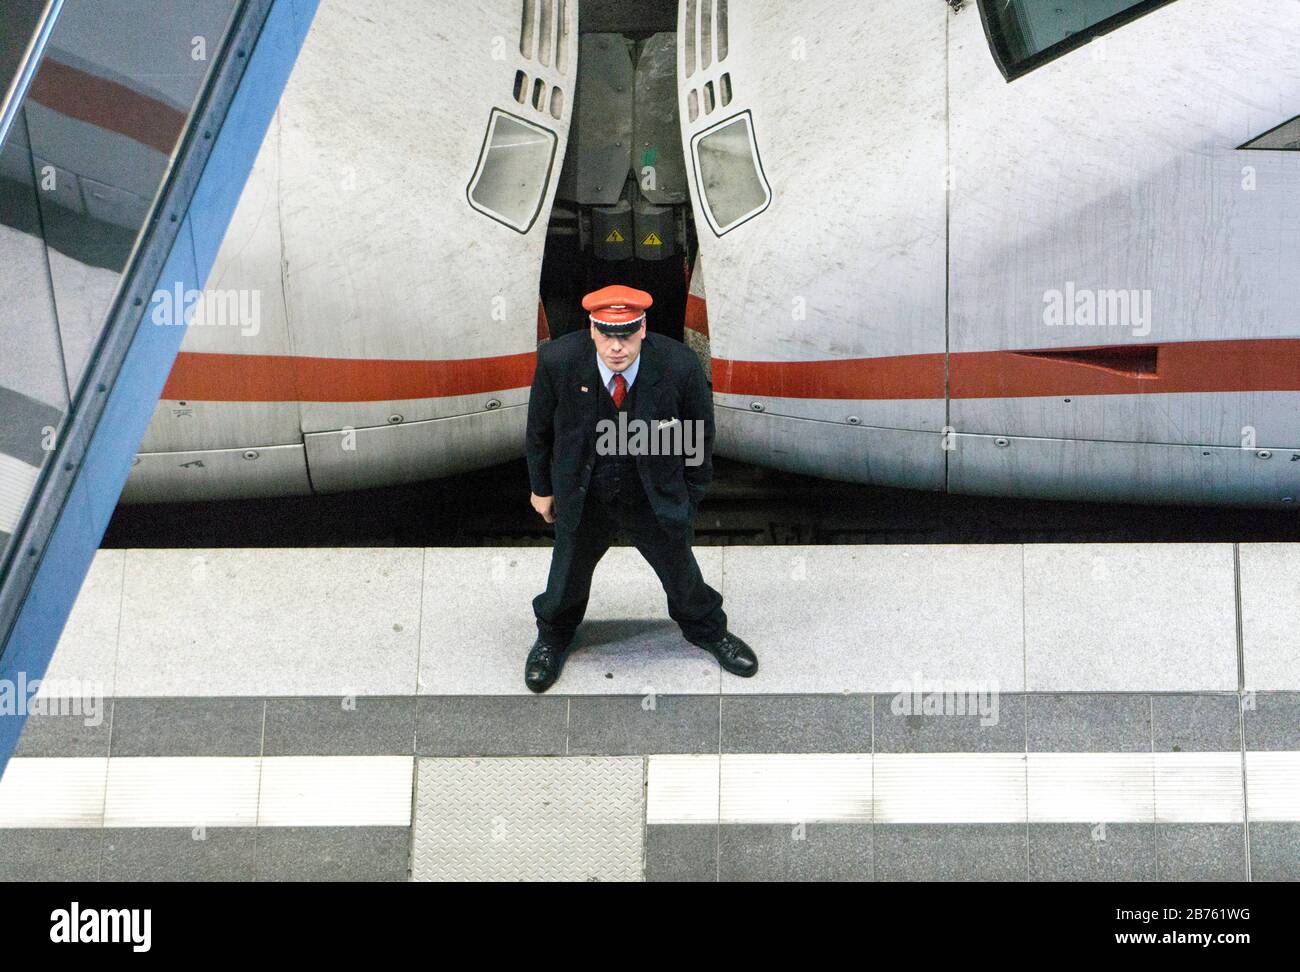 Ein Mitarbeiter der Deutschen Bahn steht am 26. September 2016 vor einem ICE-Zug auf dem Bahnsteig des Berliner Hauptbahnhofs. [Automatisierte Übersetzung] Stockfoto